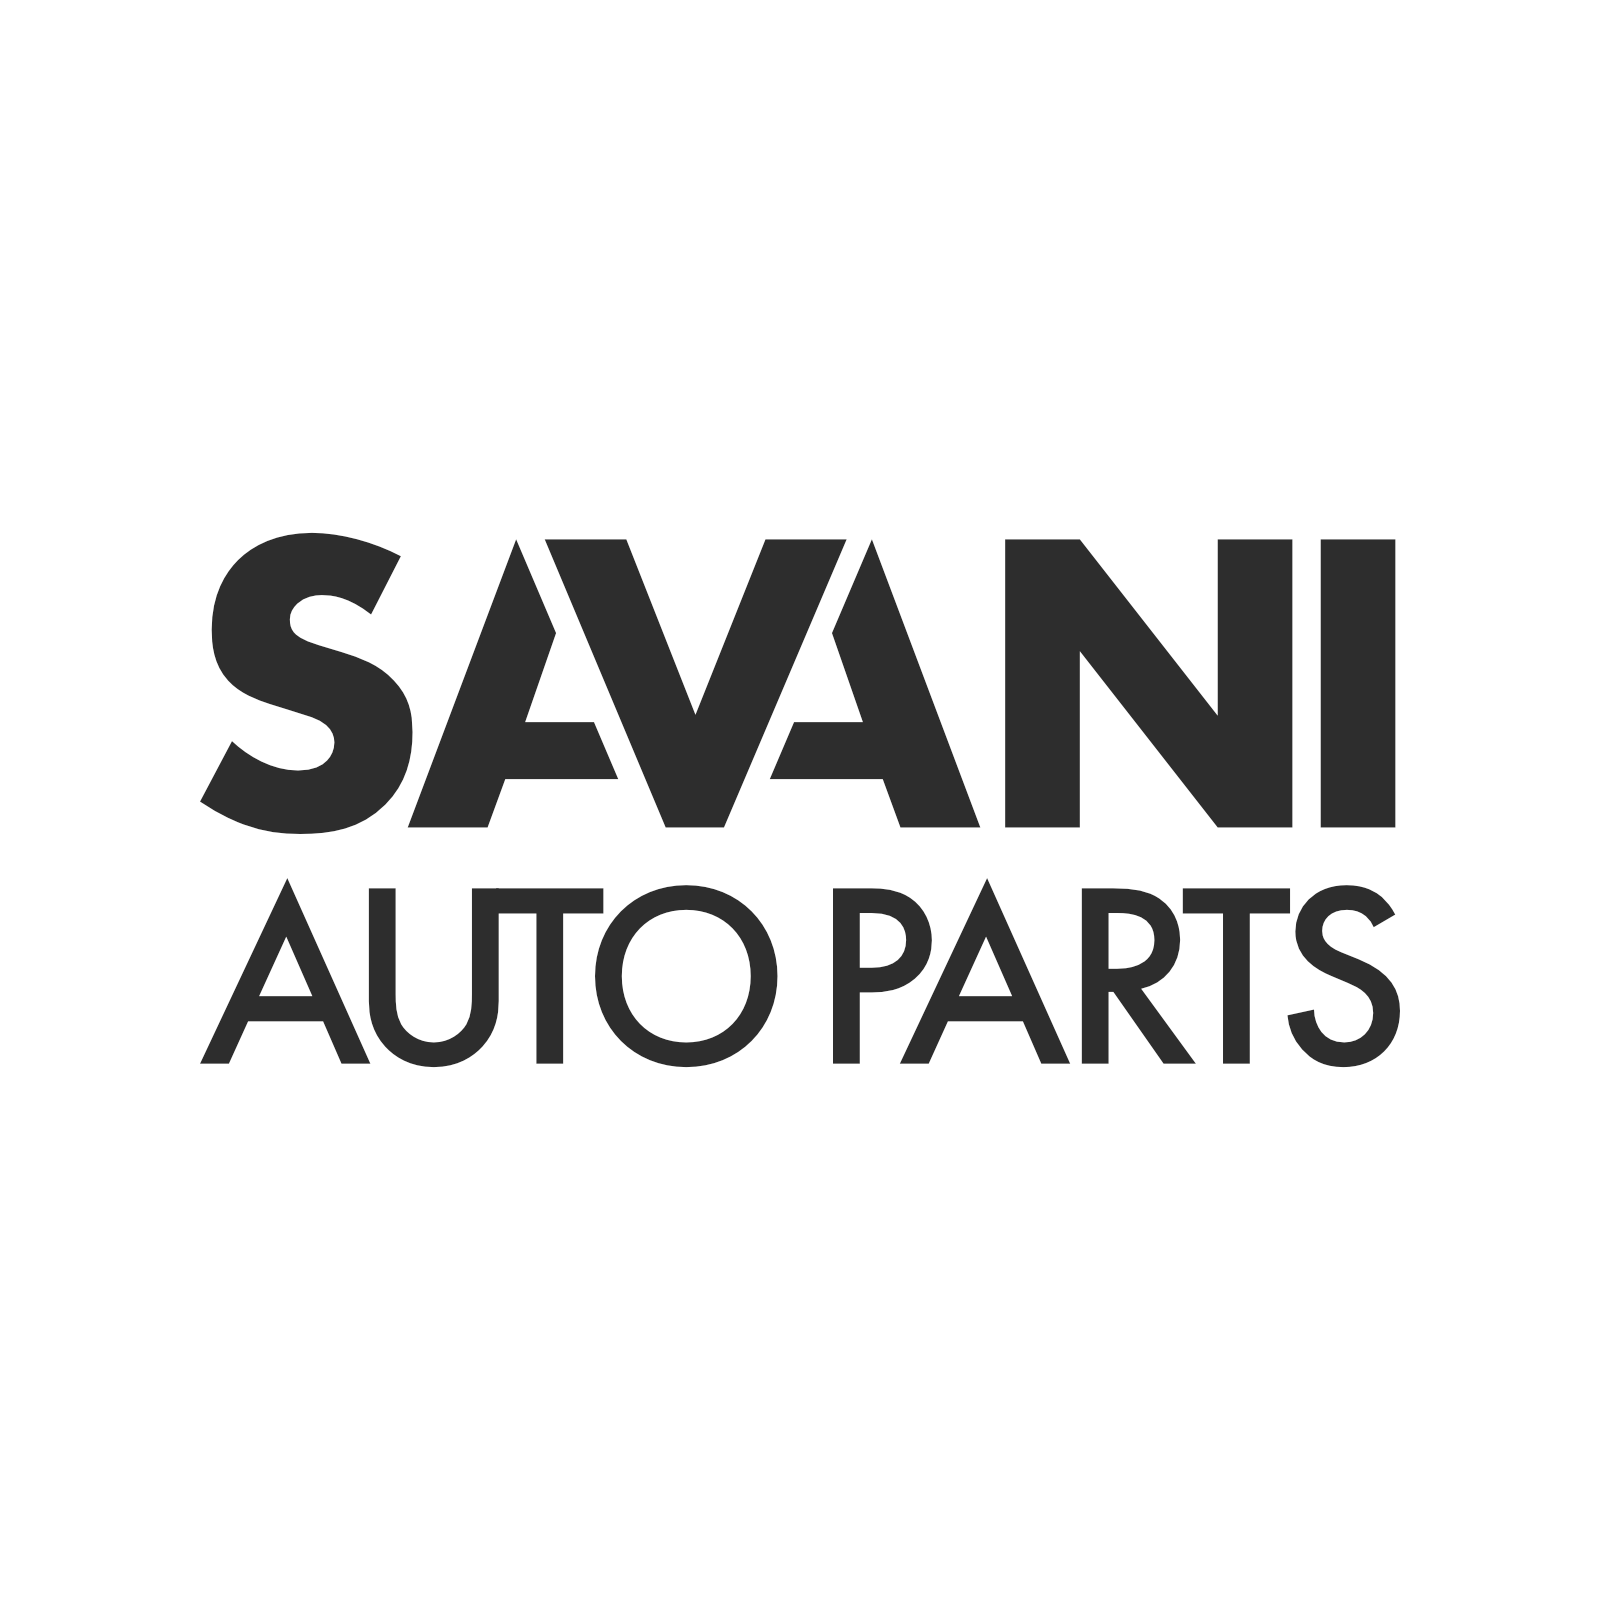 The type logo for Savani Auto Parts